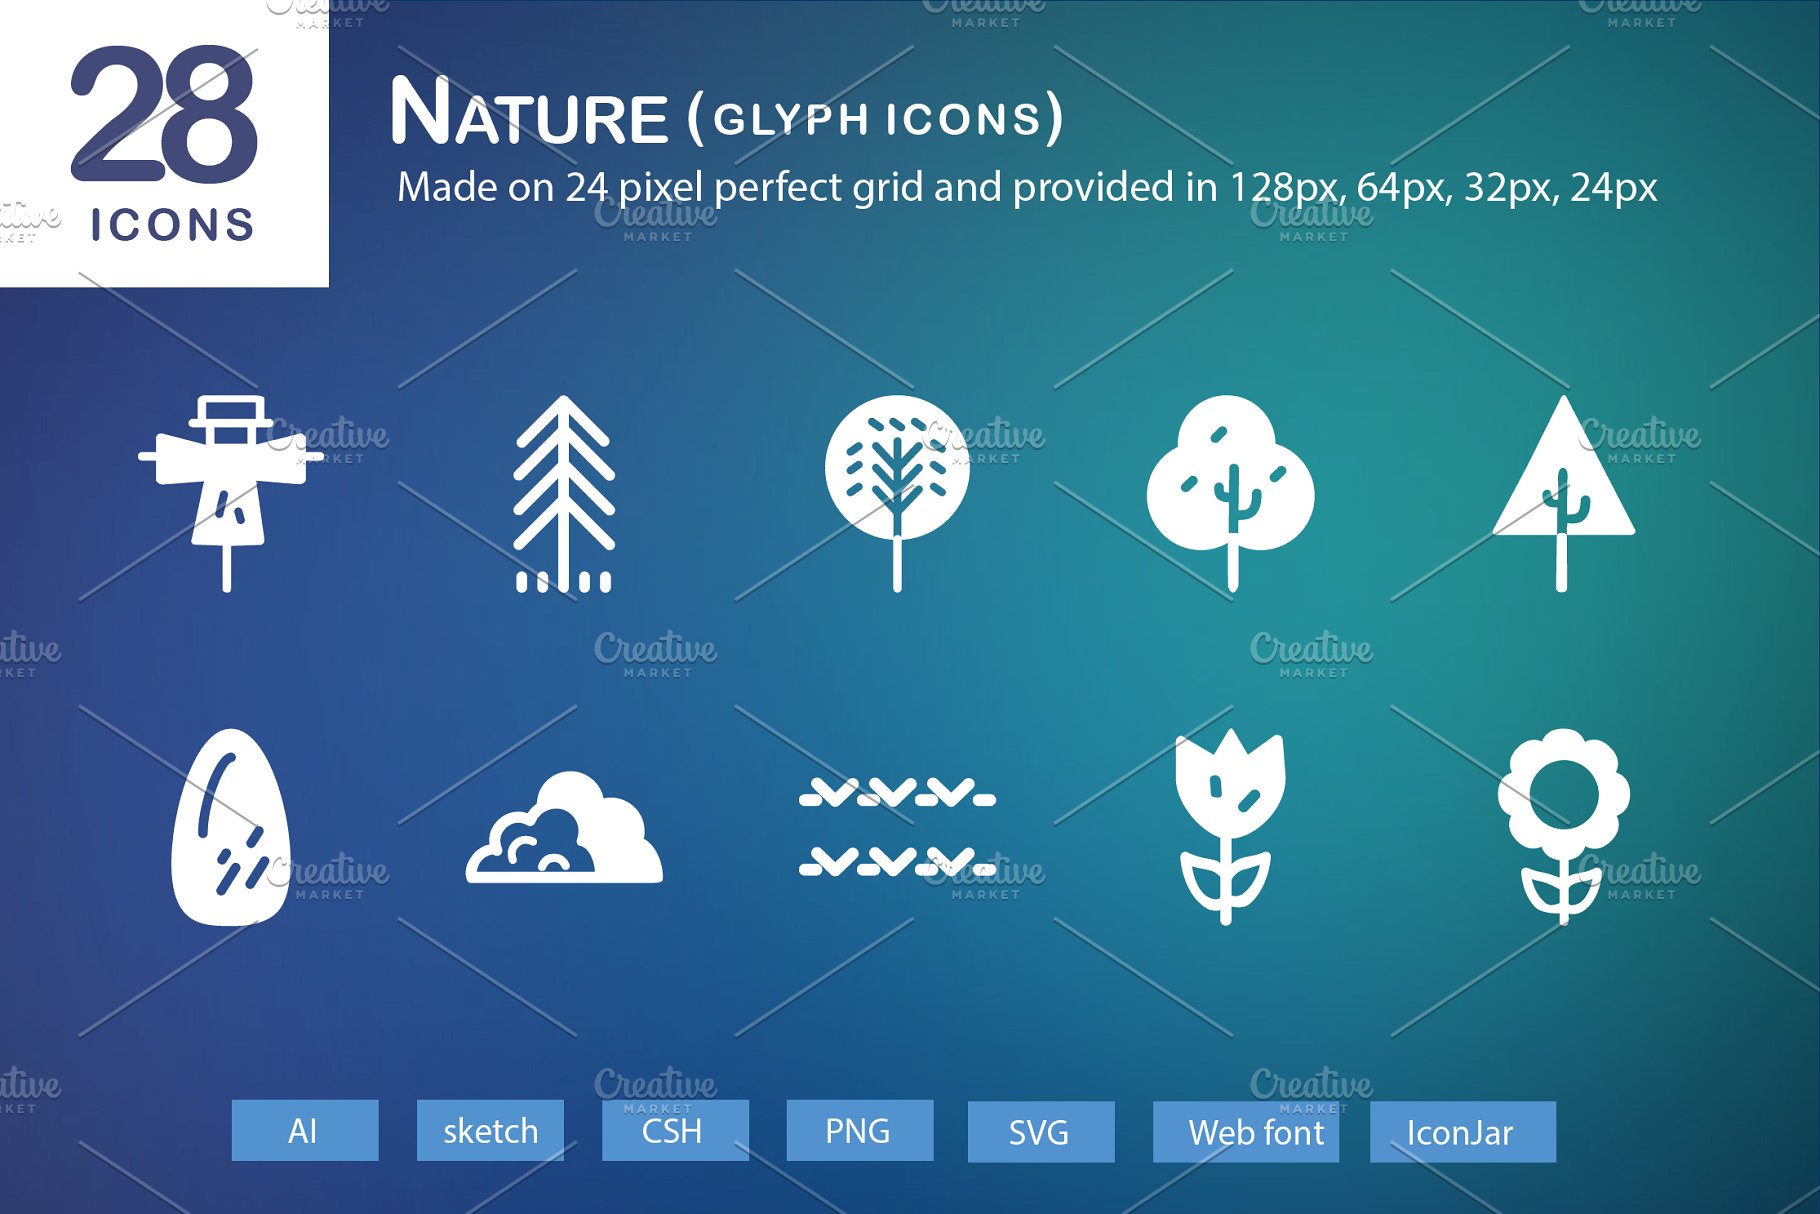 28个大自然元素字体非凡图库精选图标 28 Nature Glyph Icons插图